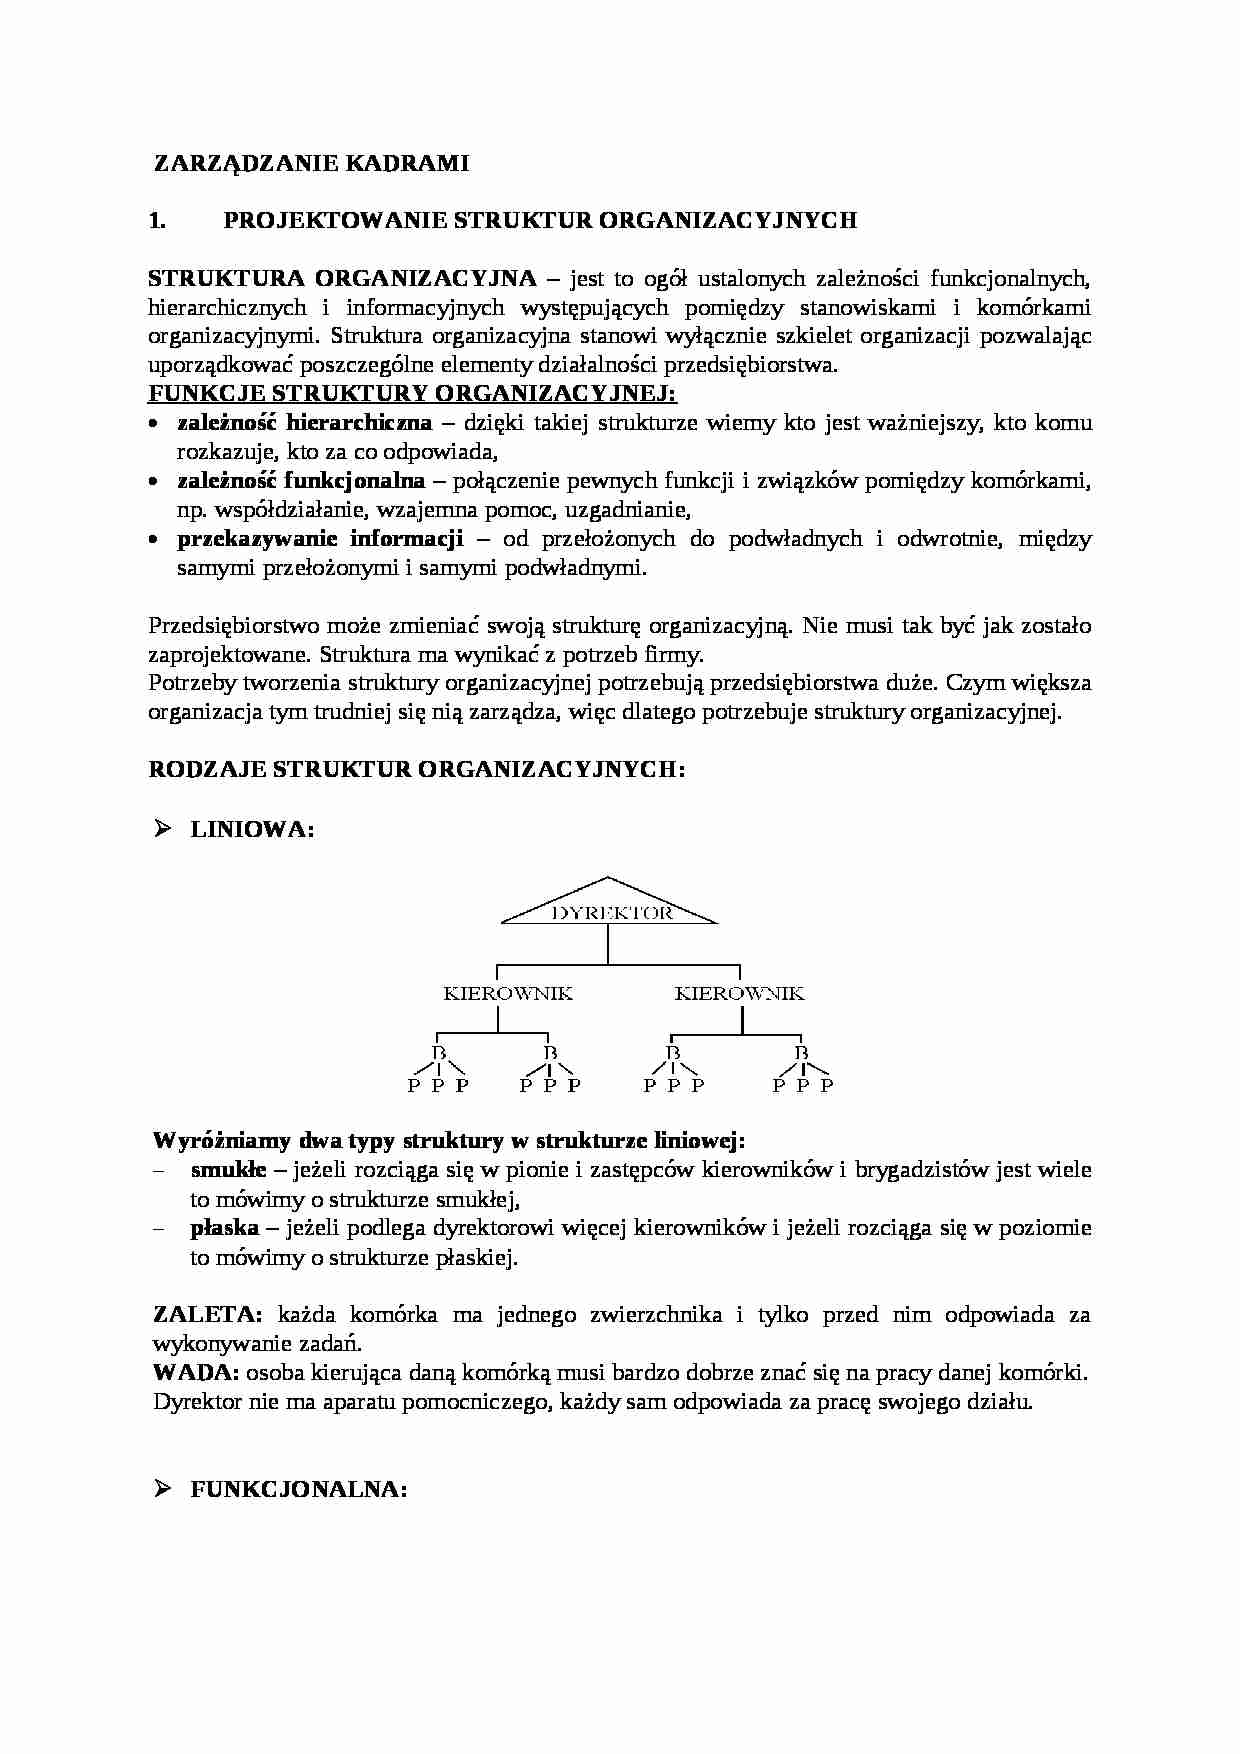 Zarządzanie zasobami ludzkimi (kadrami) - strona 1